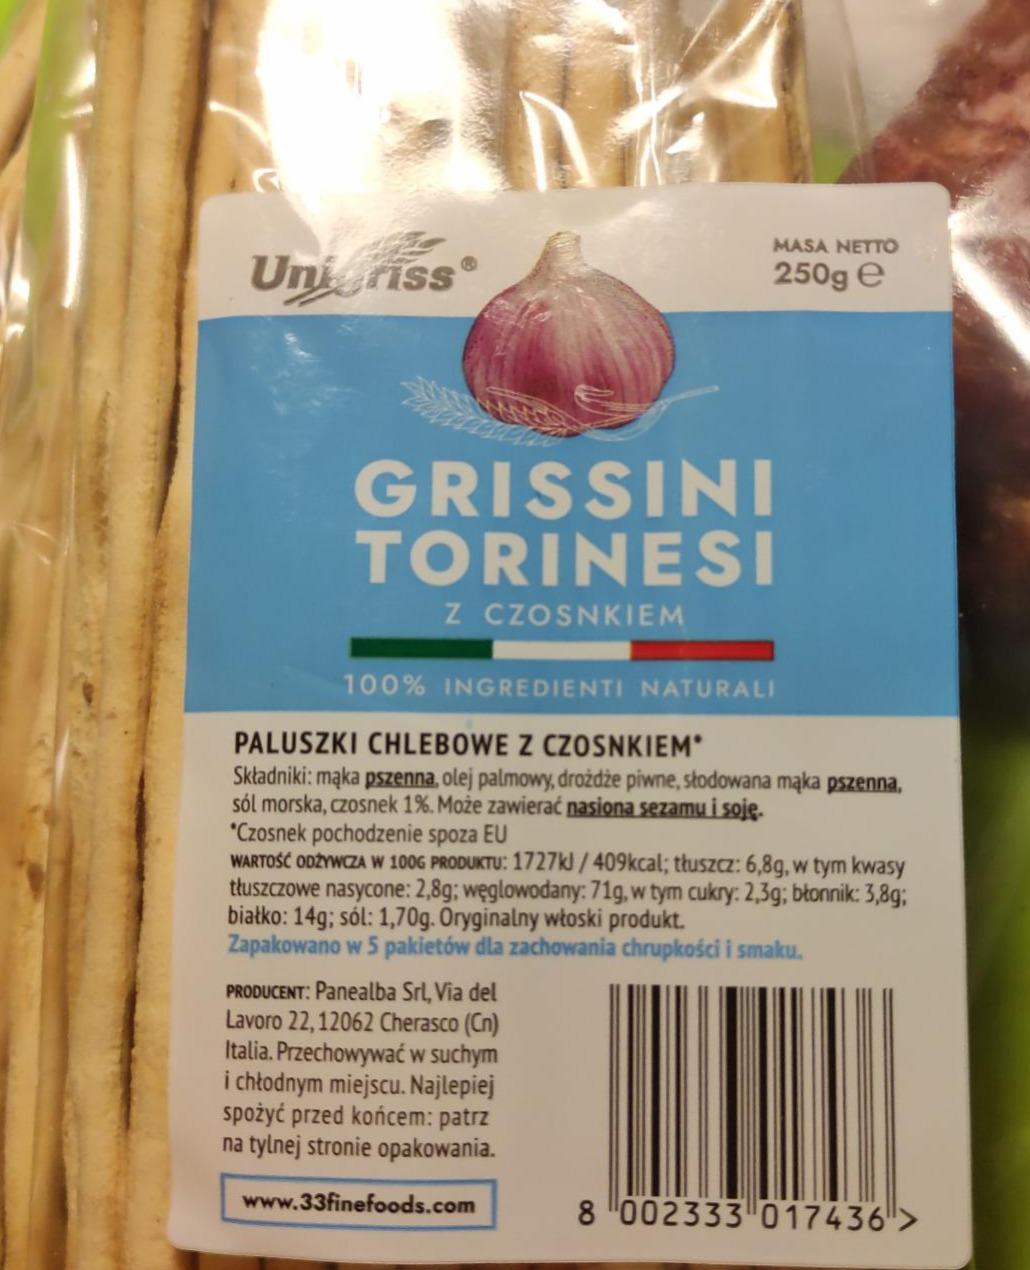 Zdjęcia - paluszki chlebowe czosnkowe Grissini Torinesi Unigriss